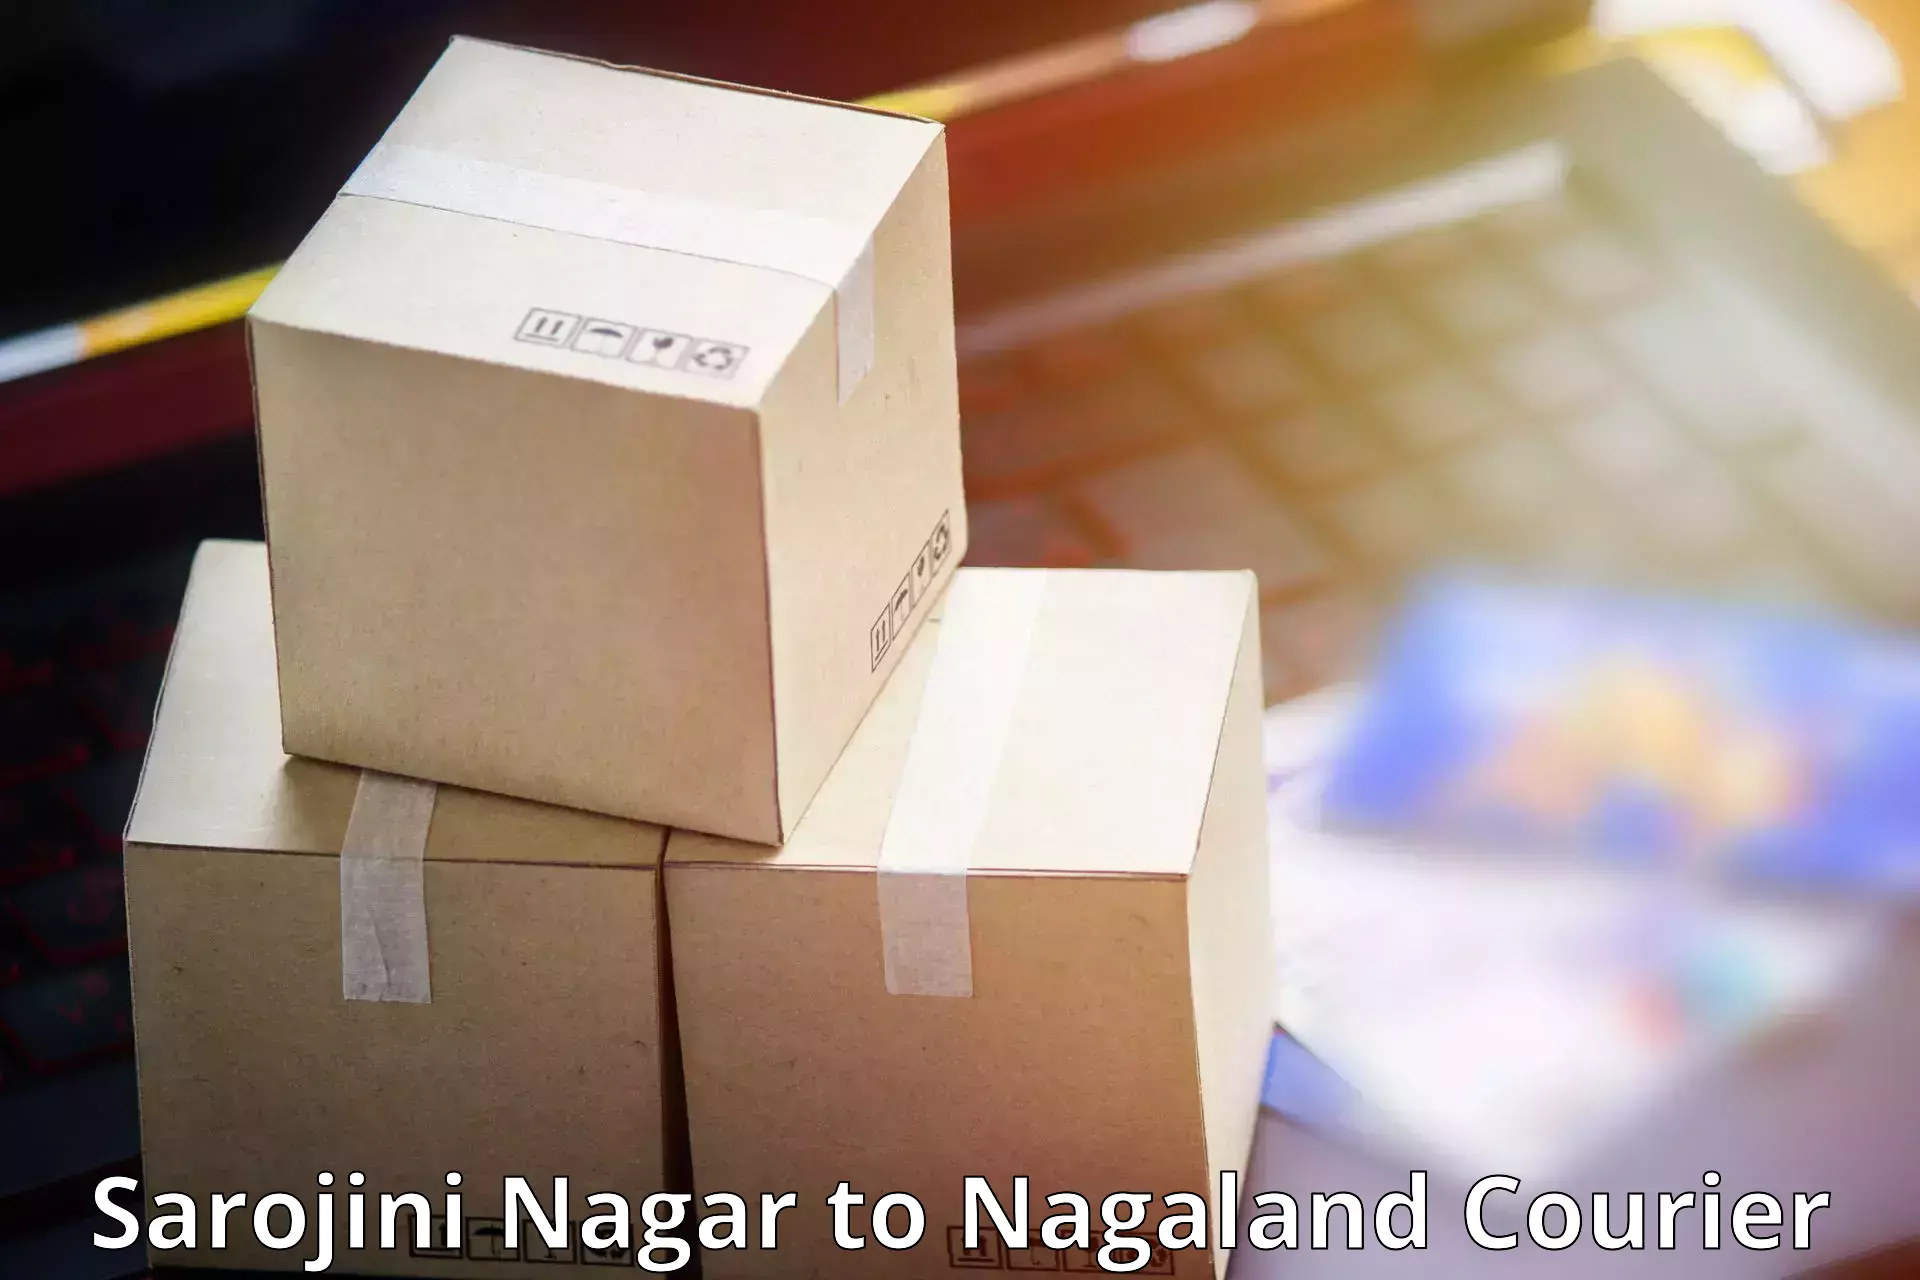 Comprehensive freight services Sarojini Nagar to NIT Nagaland